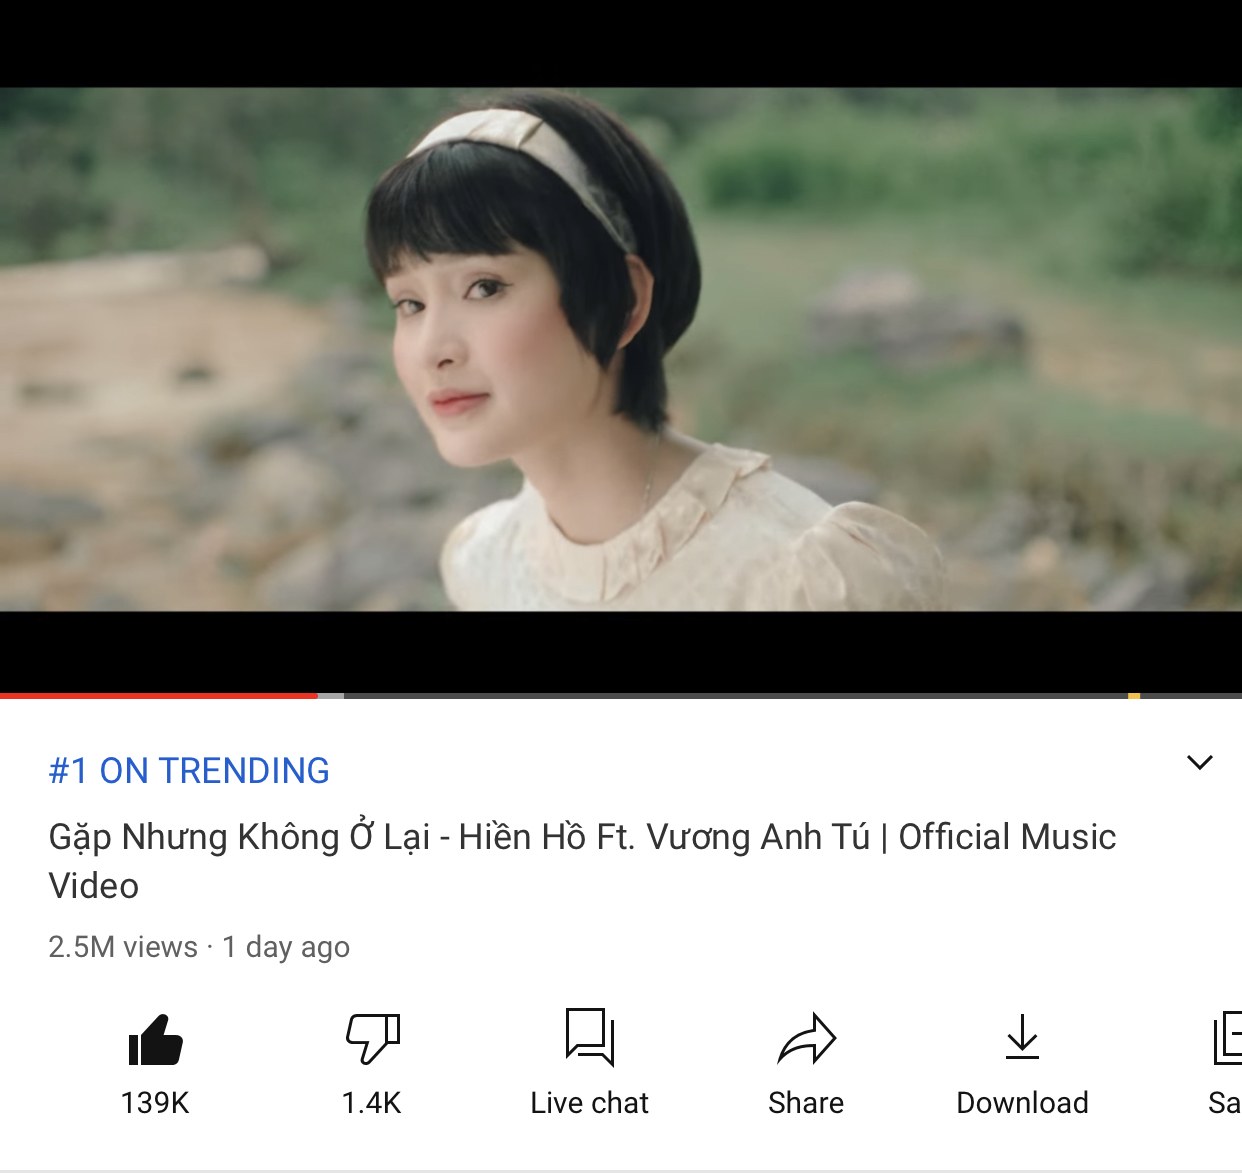 Hiền Hồ đạt Top 1 Trending đầu tiên trong sự nghiệp với MV Gặp Nhưng Không Ở Lại